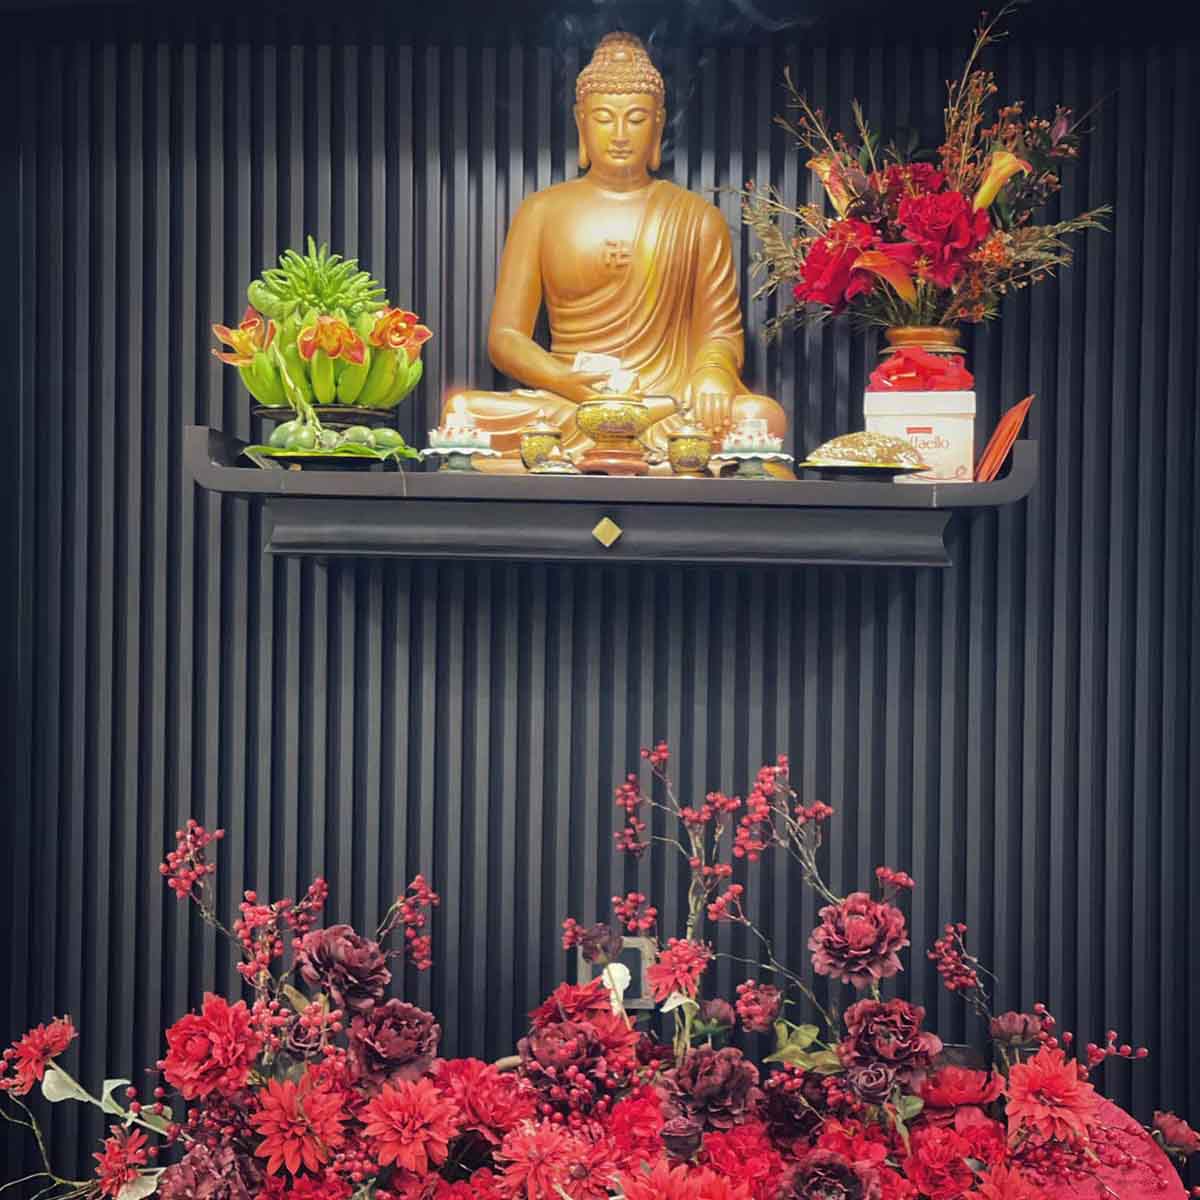 Tết đến, bàn thờ Phật rực sắc đỏ hoa tươi. Nguồn: Fb Ngọc Linh